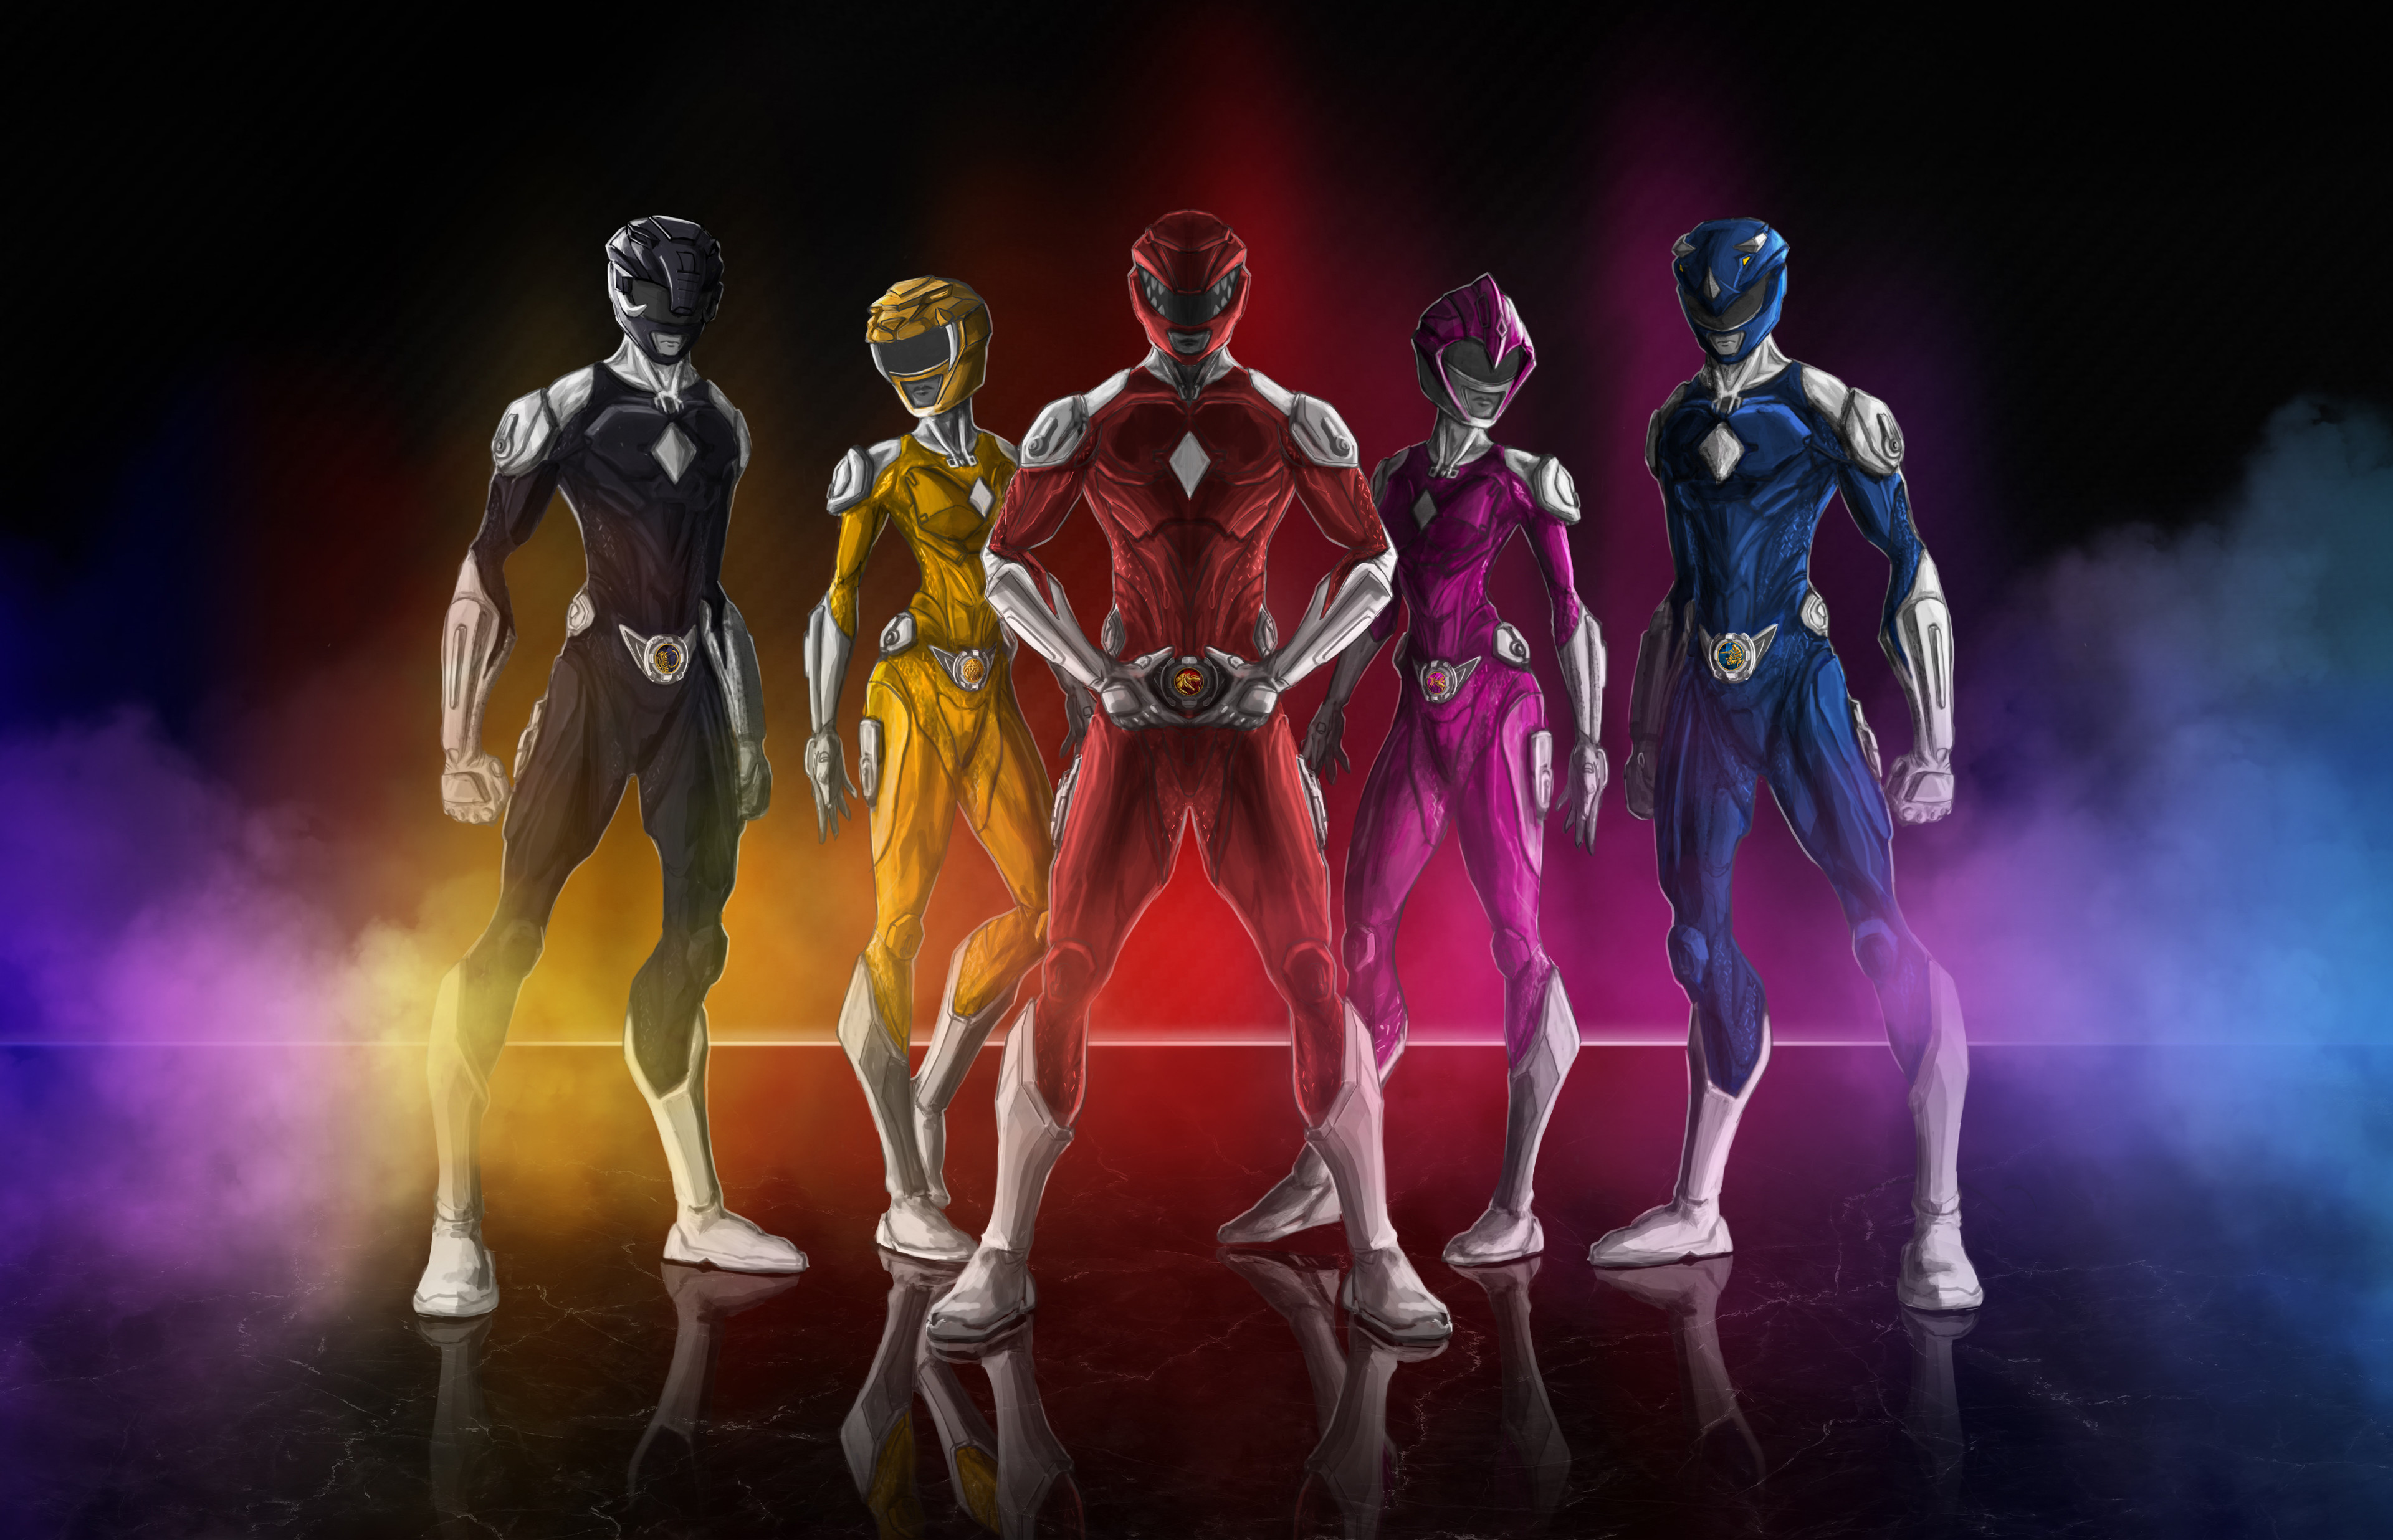 32+] Power Rangers Super Megaforce Wallpapers - WallpaperSafari